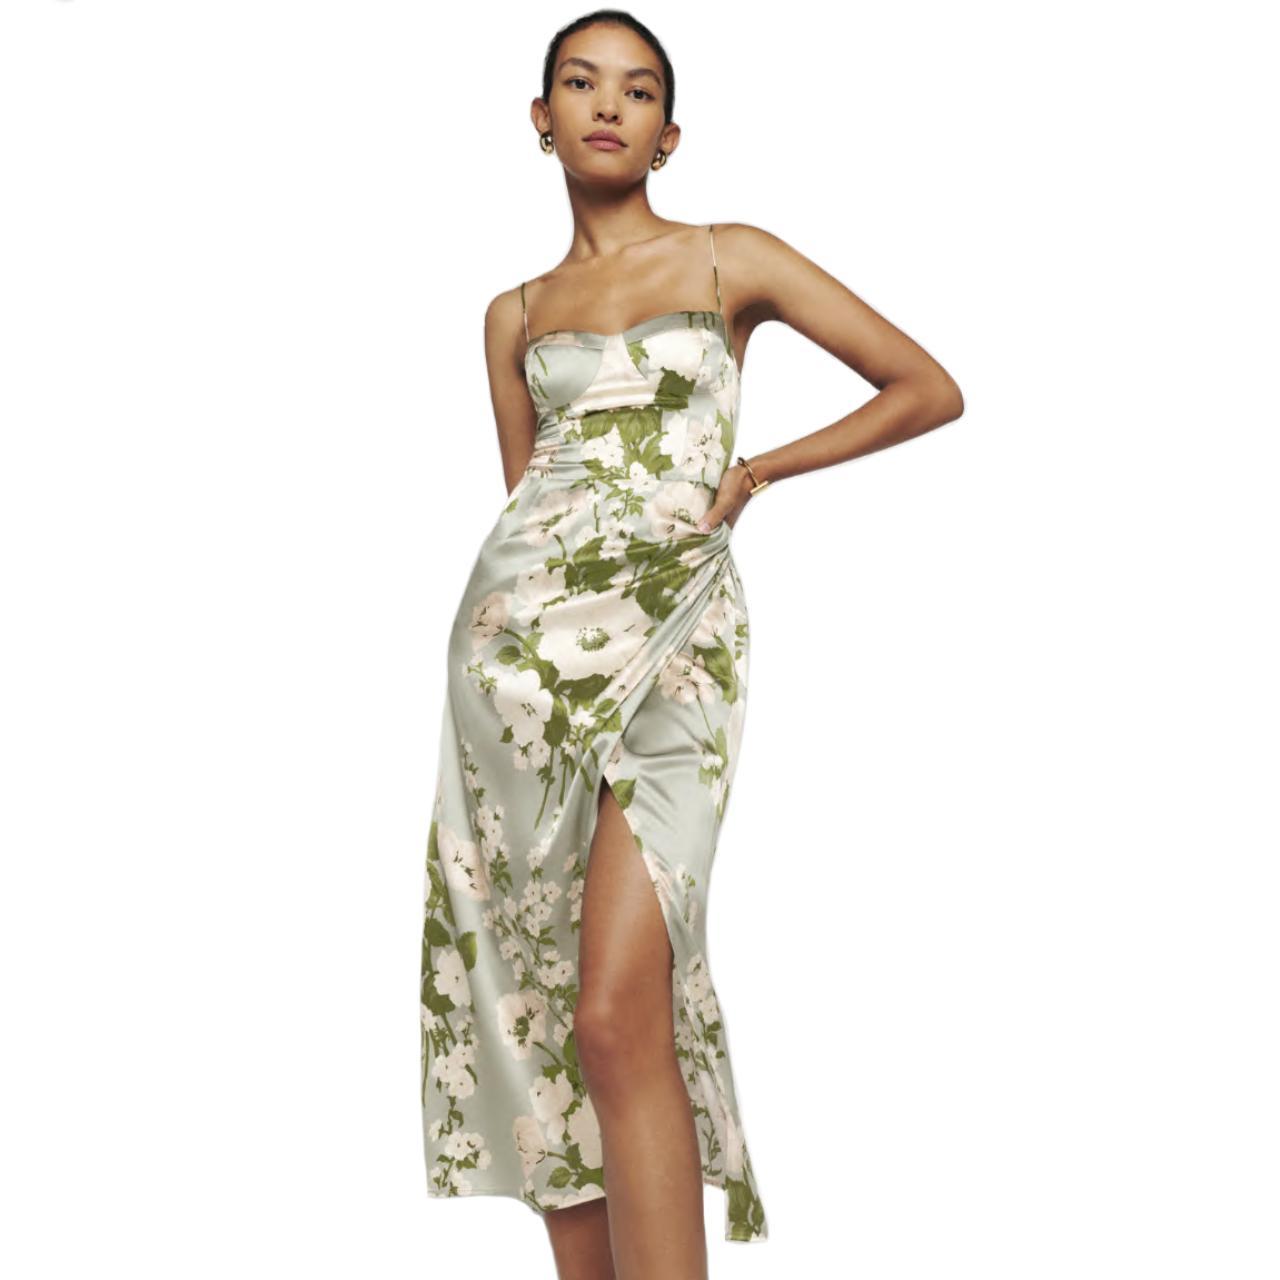 Reformation 'Marguerite Silk Dress' Size 6 - Worn... - Depop